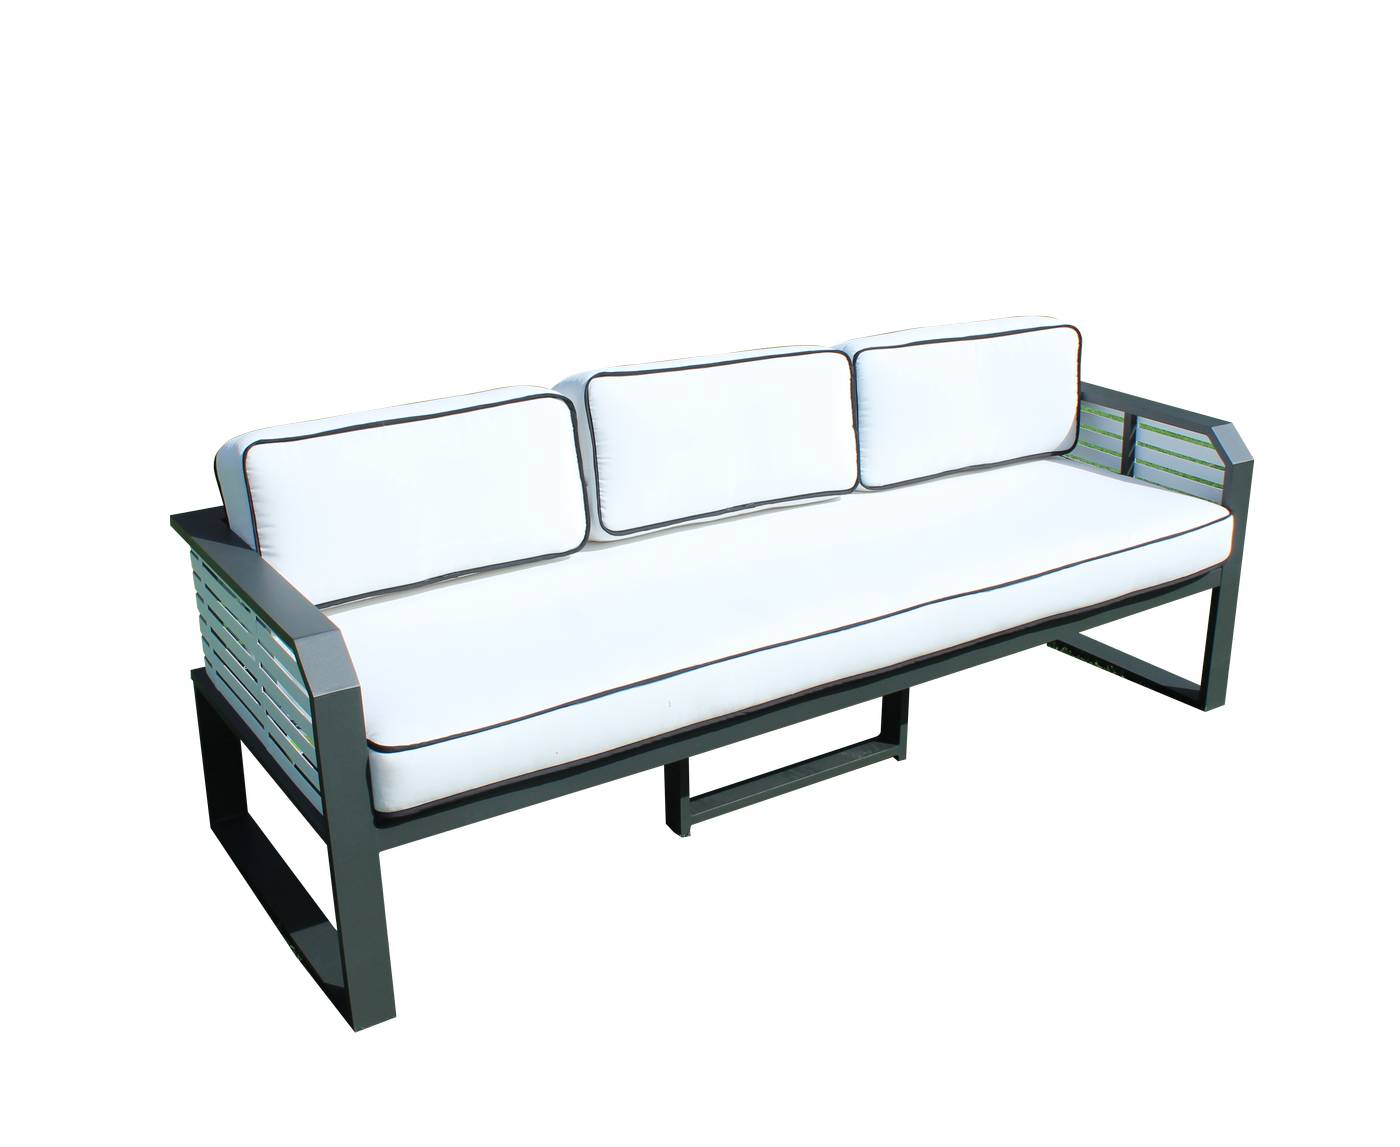 Sofá Aluminio Sira-3 - Coqueto sofá 3 plazas de alumnio bicolor, con cojines gran confort desenfundables.